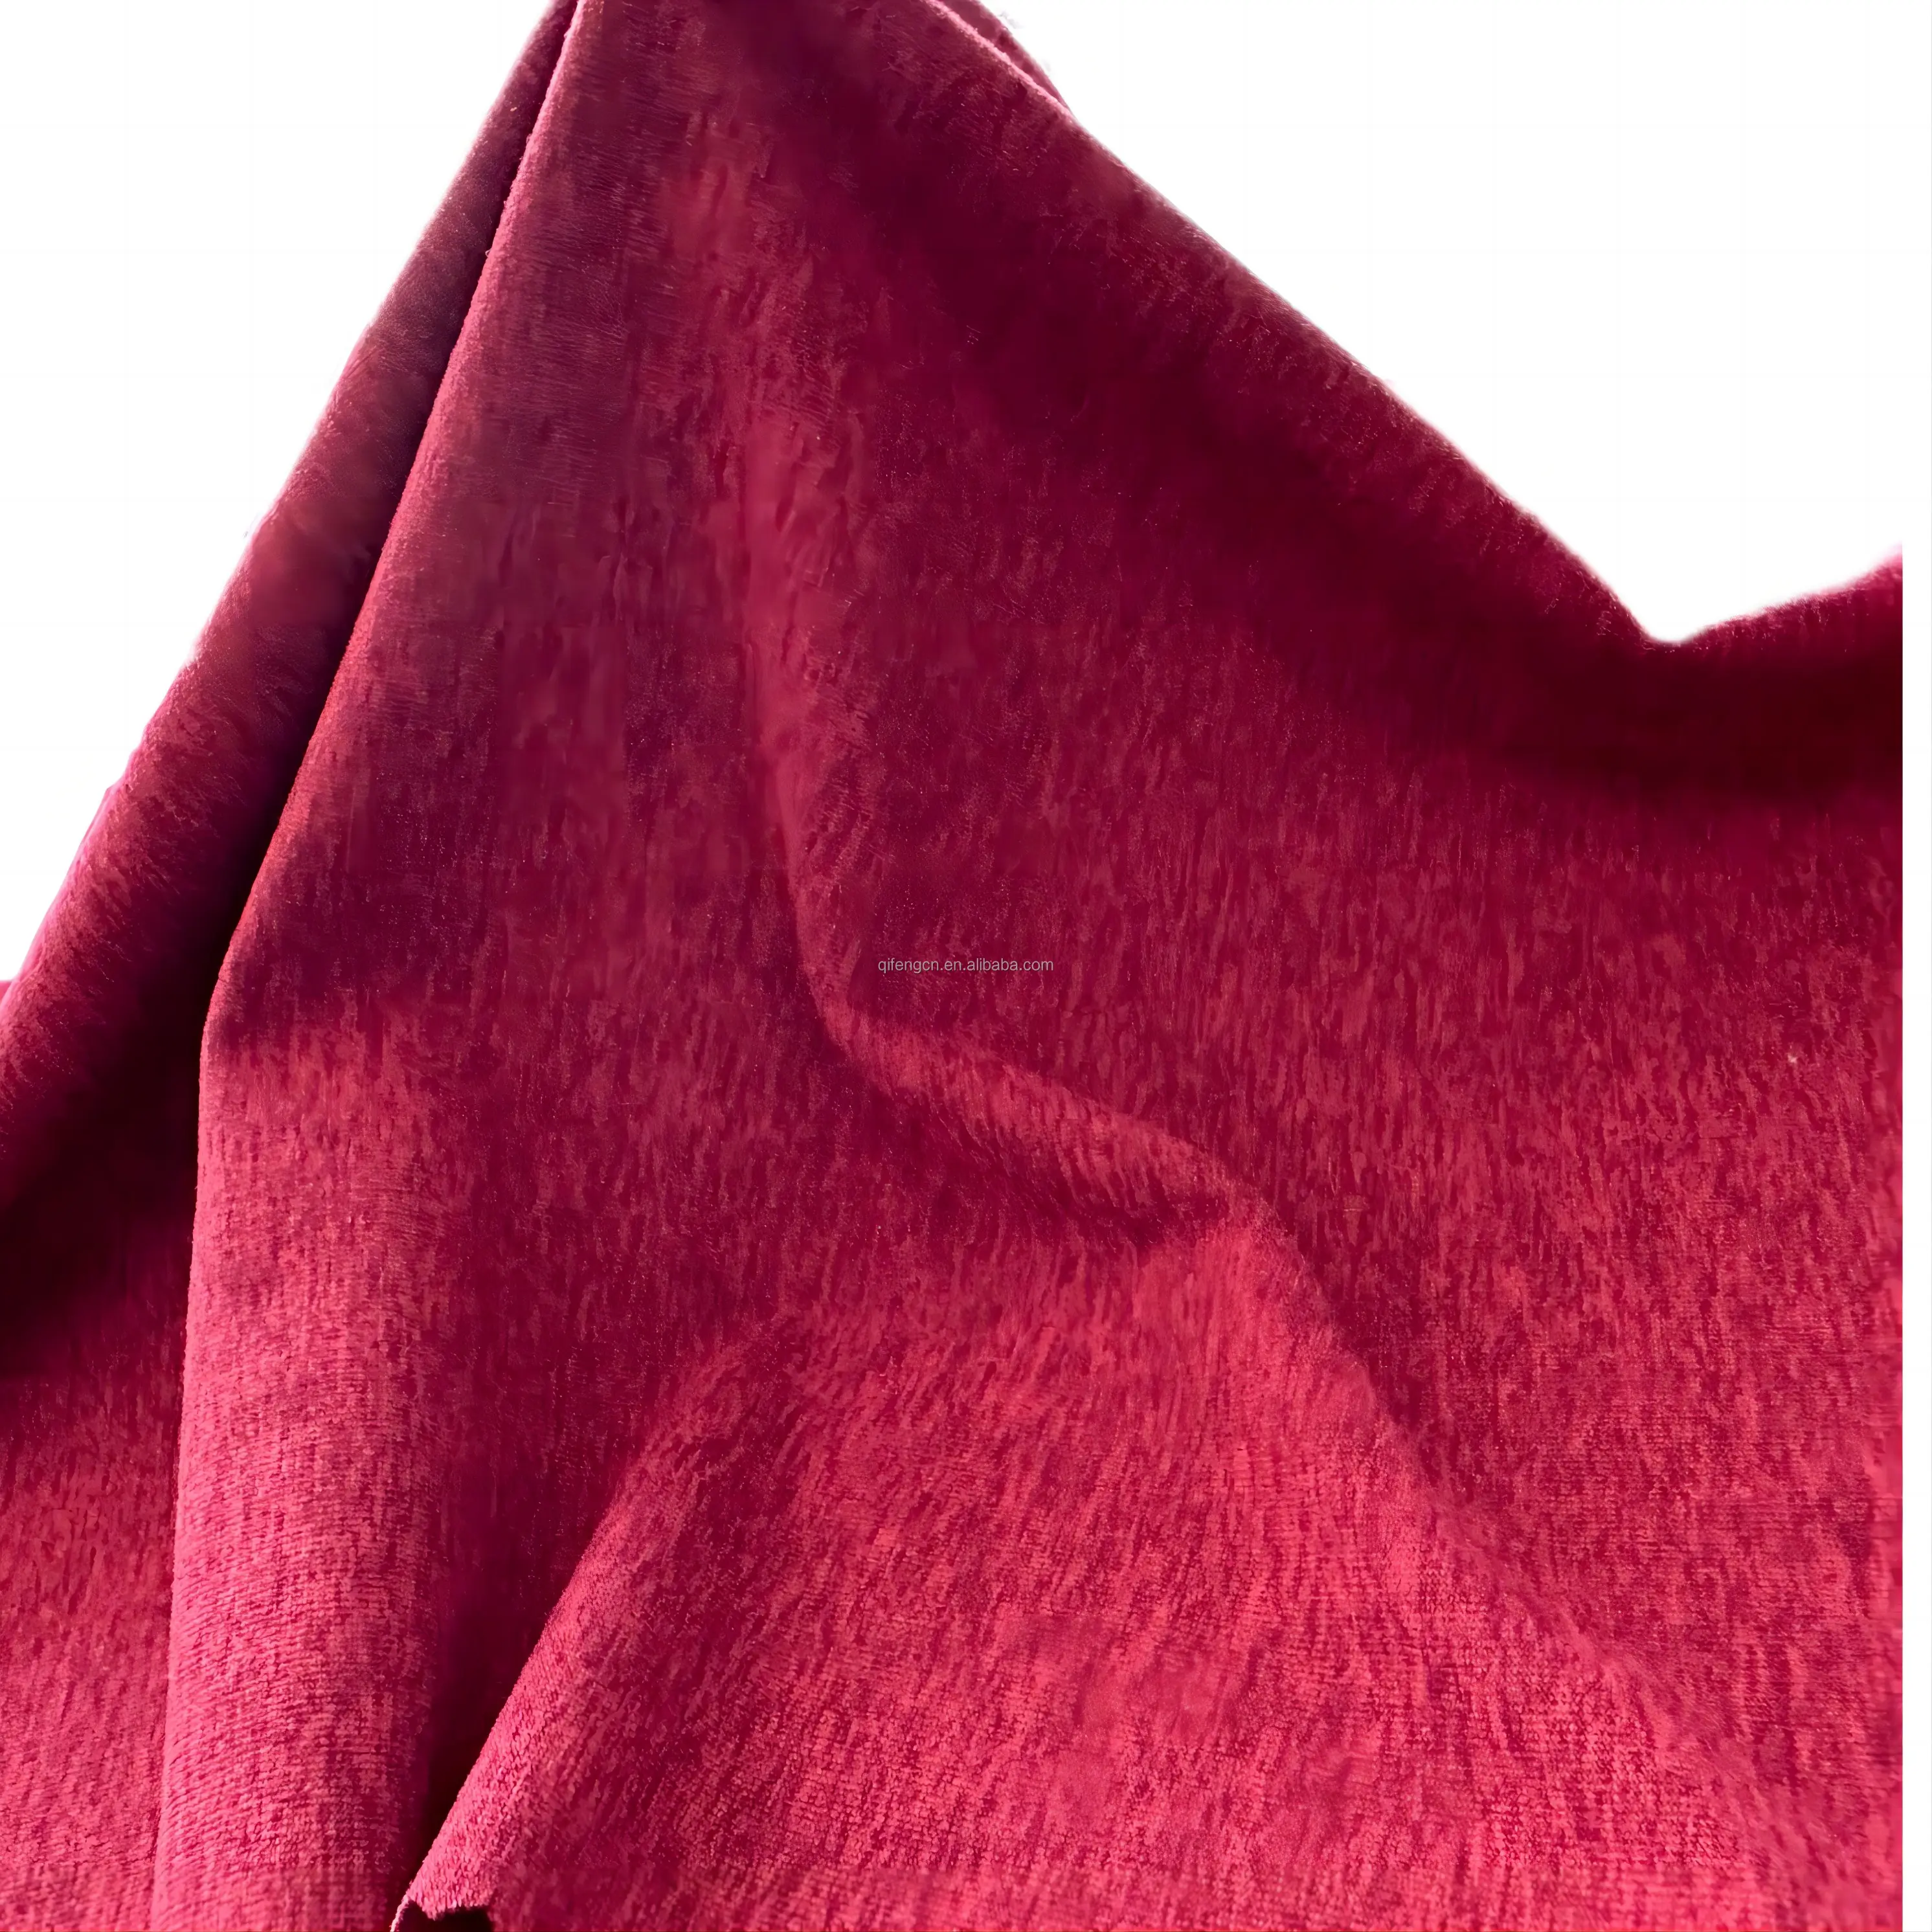 Katyon Jersey giysi kumaşı, t-shirt, spor salonu için Spandex kumaş